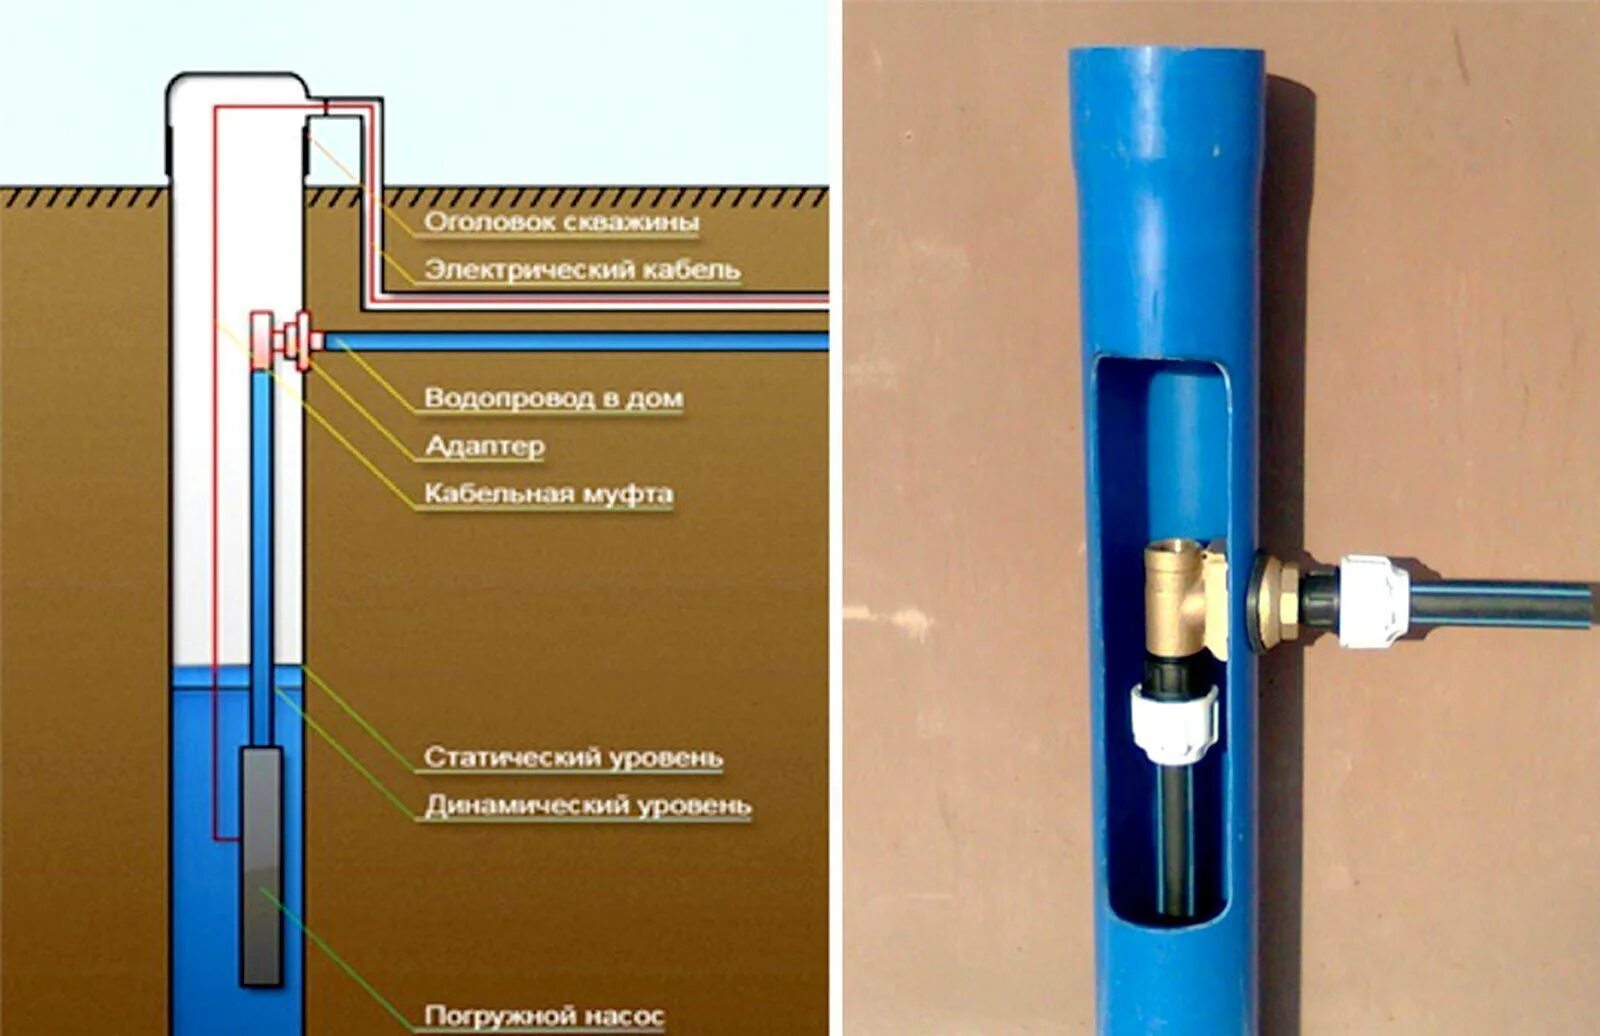 Скважина соединение труб. Адаптер скважинный на 32 ПНД. Адаптер для скважины 1 под 32 ПНД трубу. Схема водоснабжения скважинный адаптер насос. Чертеж скважинного адаптера.